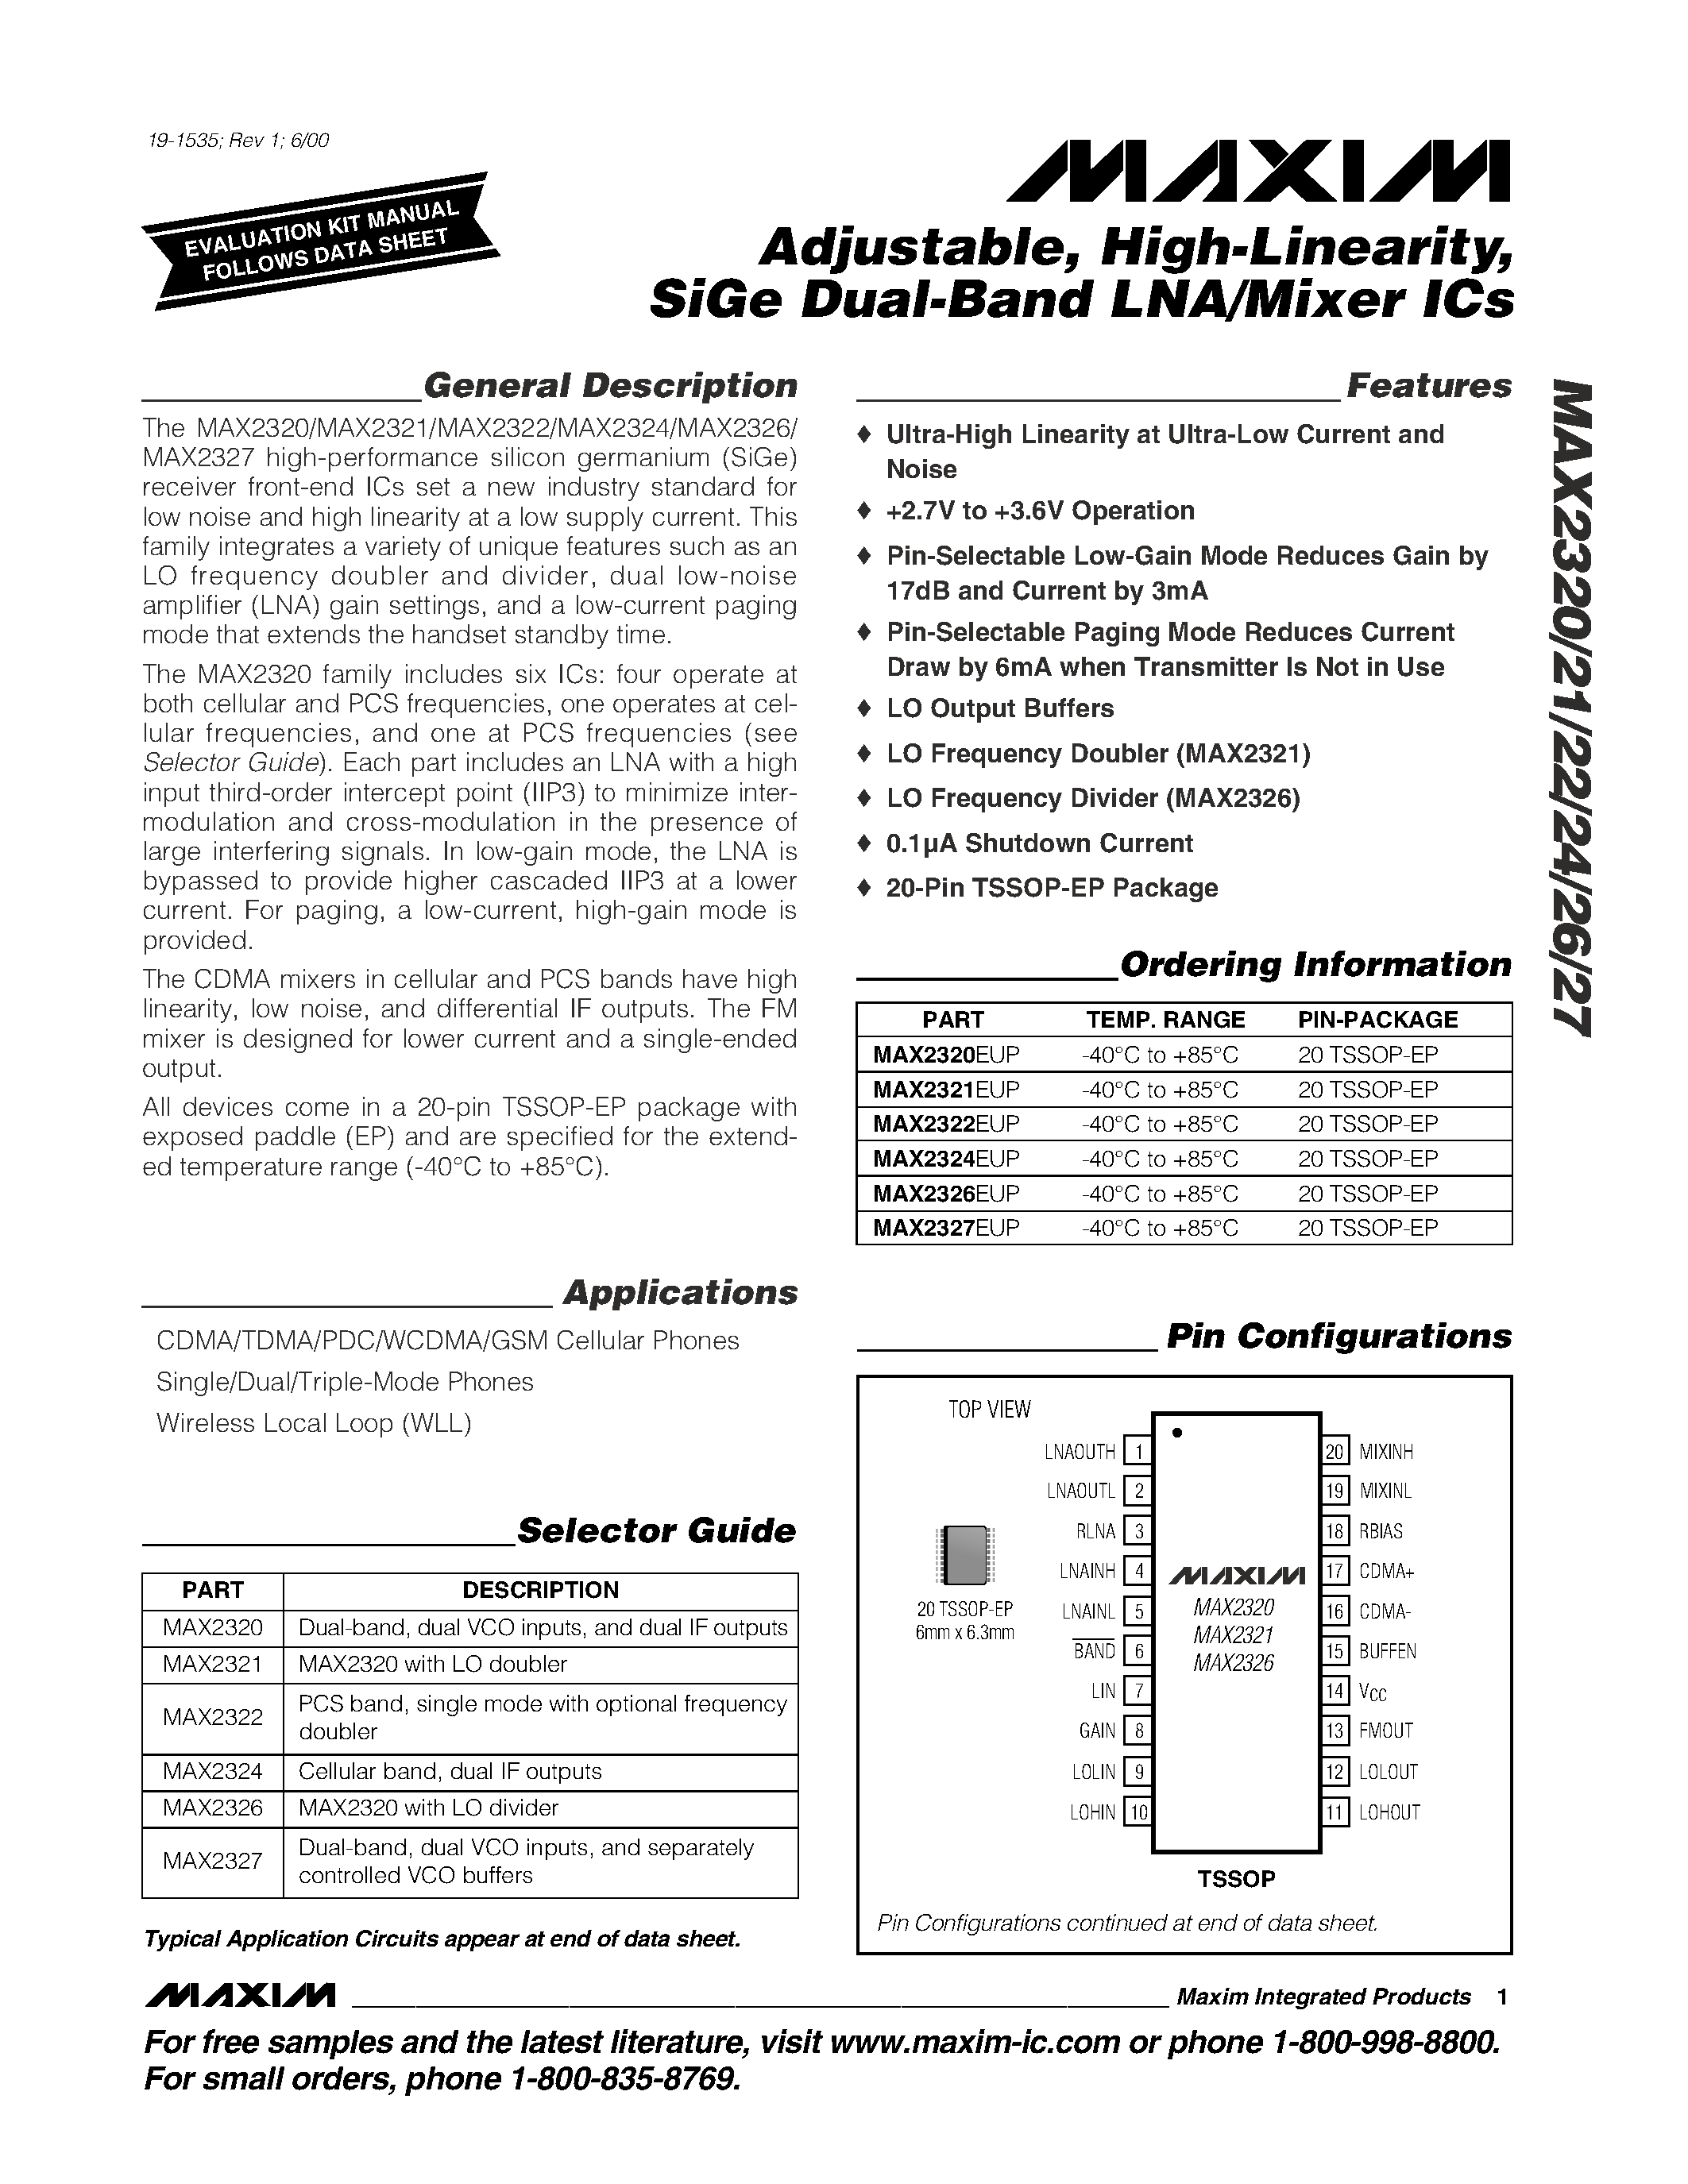 Даташит MAX2321 - Adjustable / High-Linearity / SiGe Dual-Band LNA/Mixer ICs страница 1